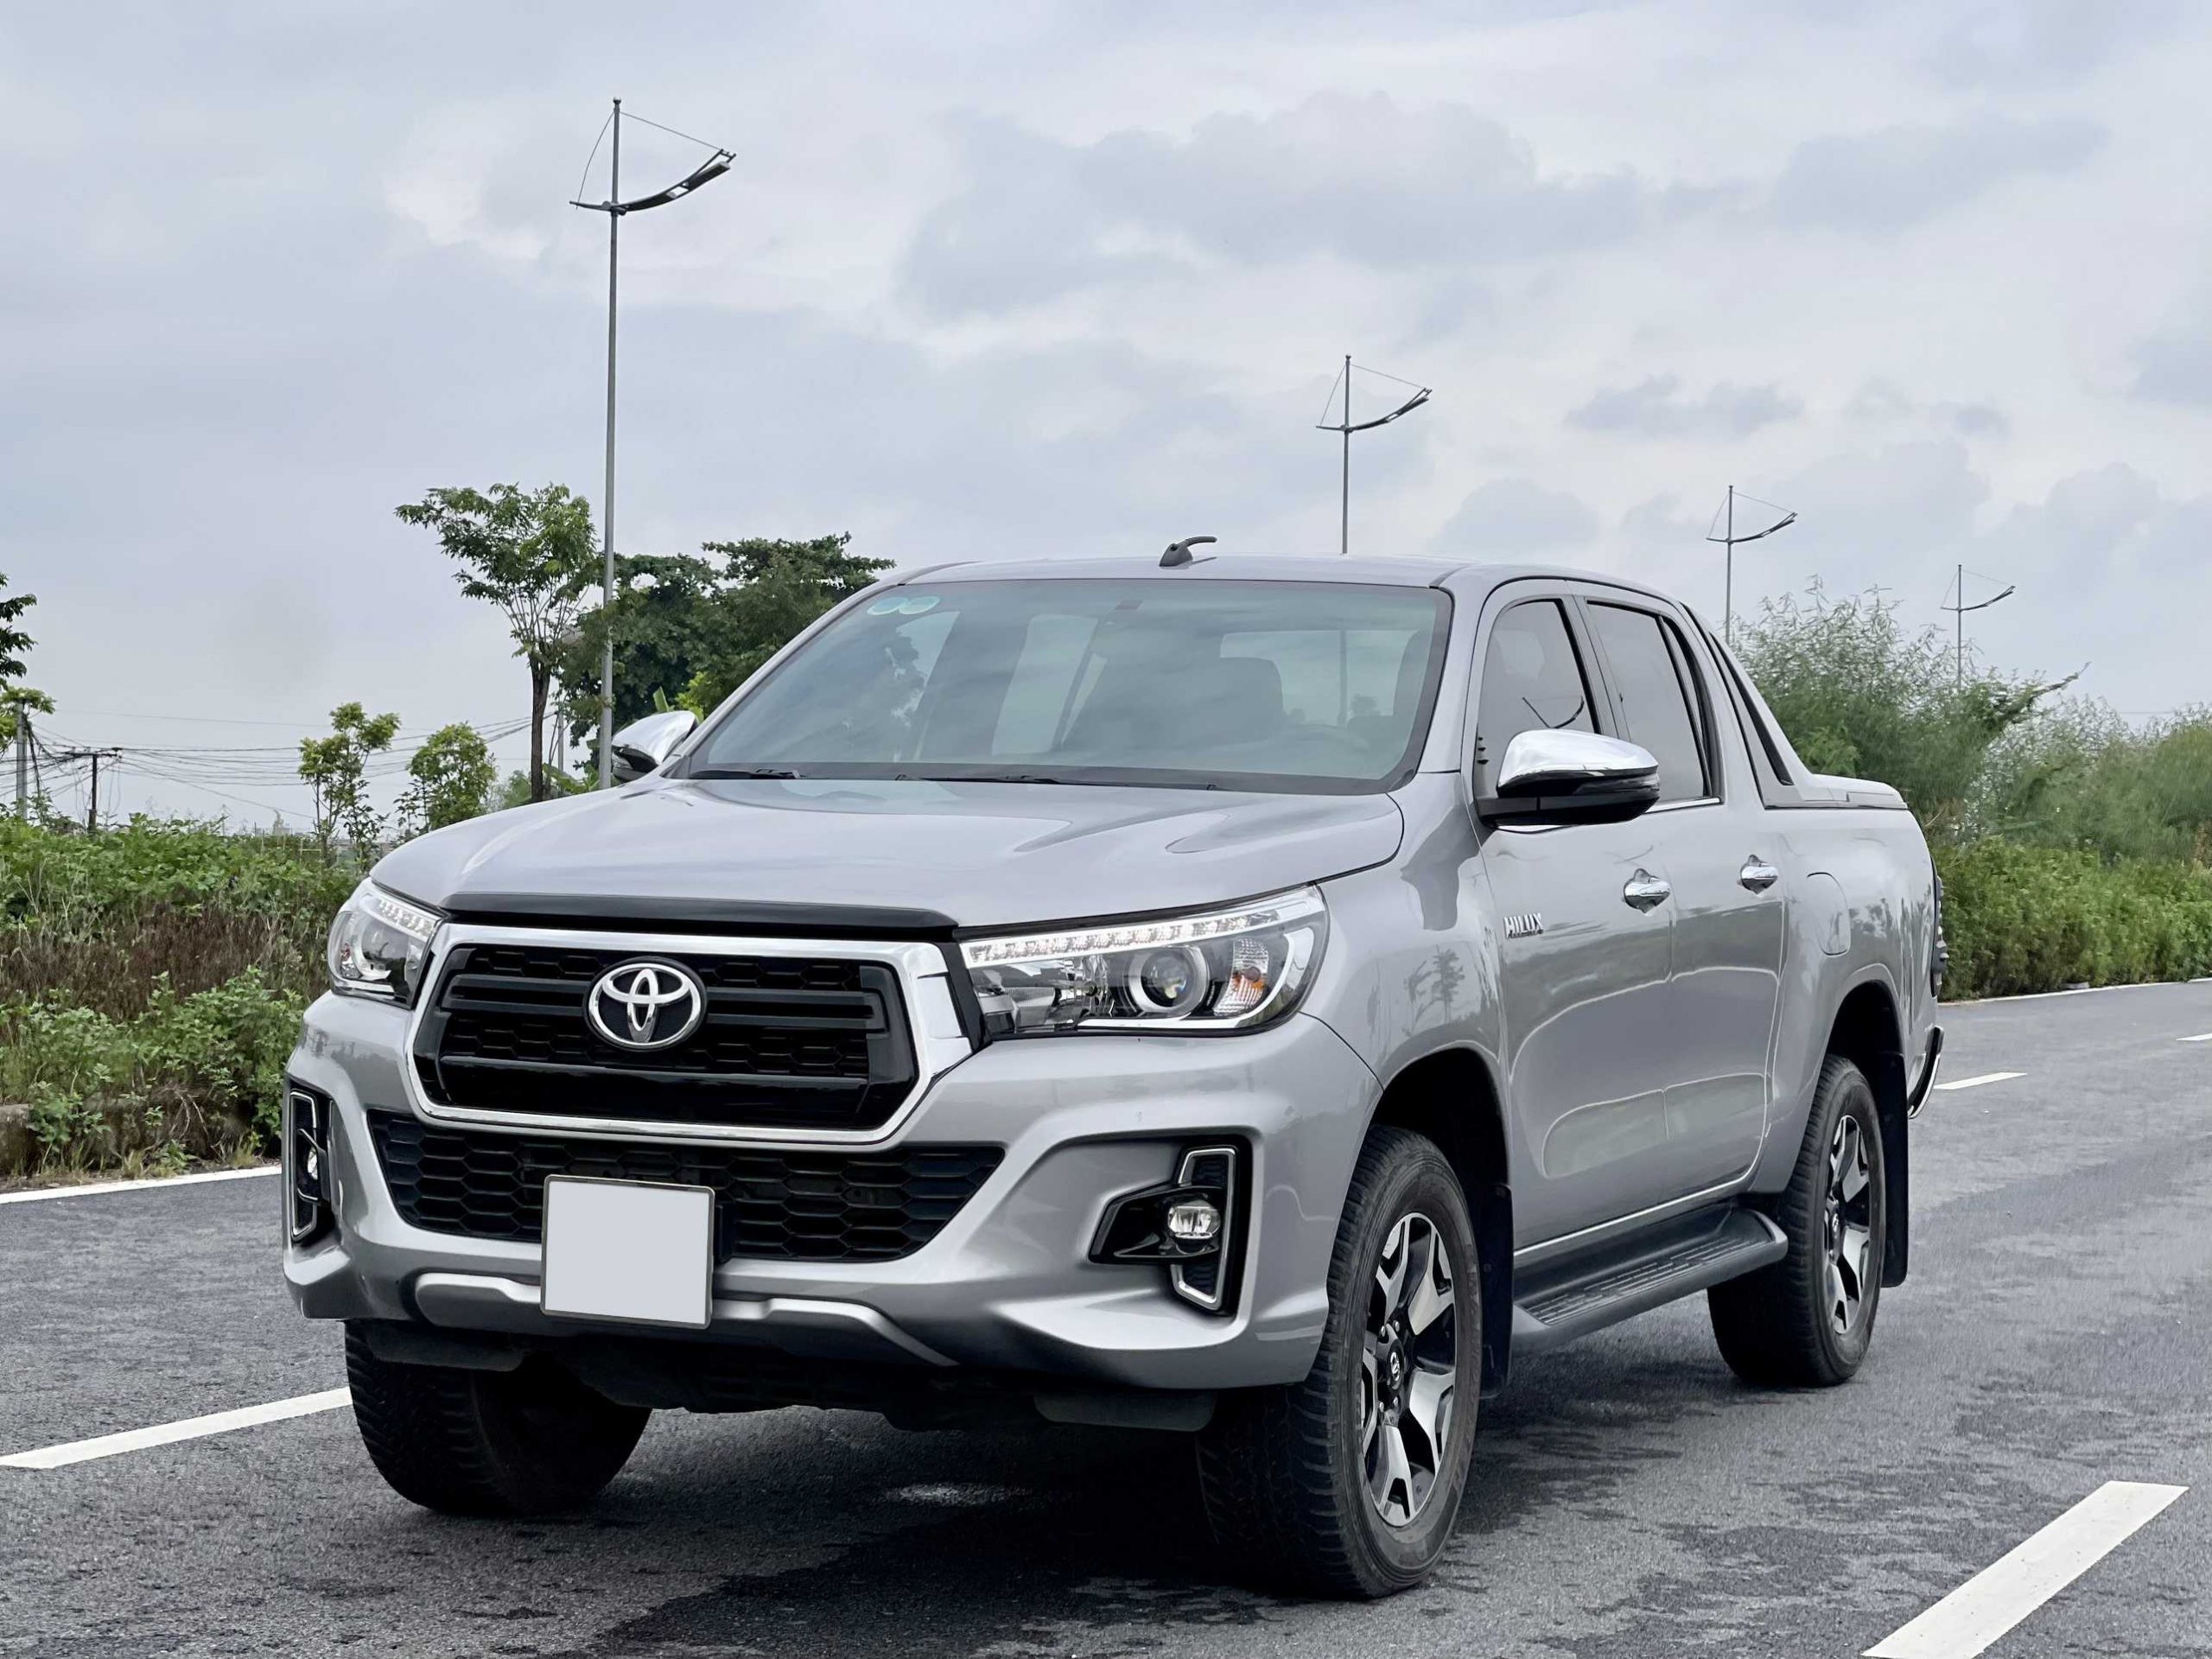 Giá niêm yết Toyota Hilux 2019 giảm tới 33 triệu đồng